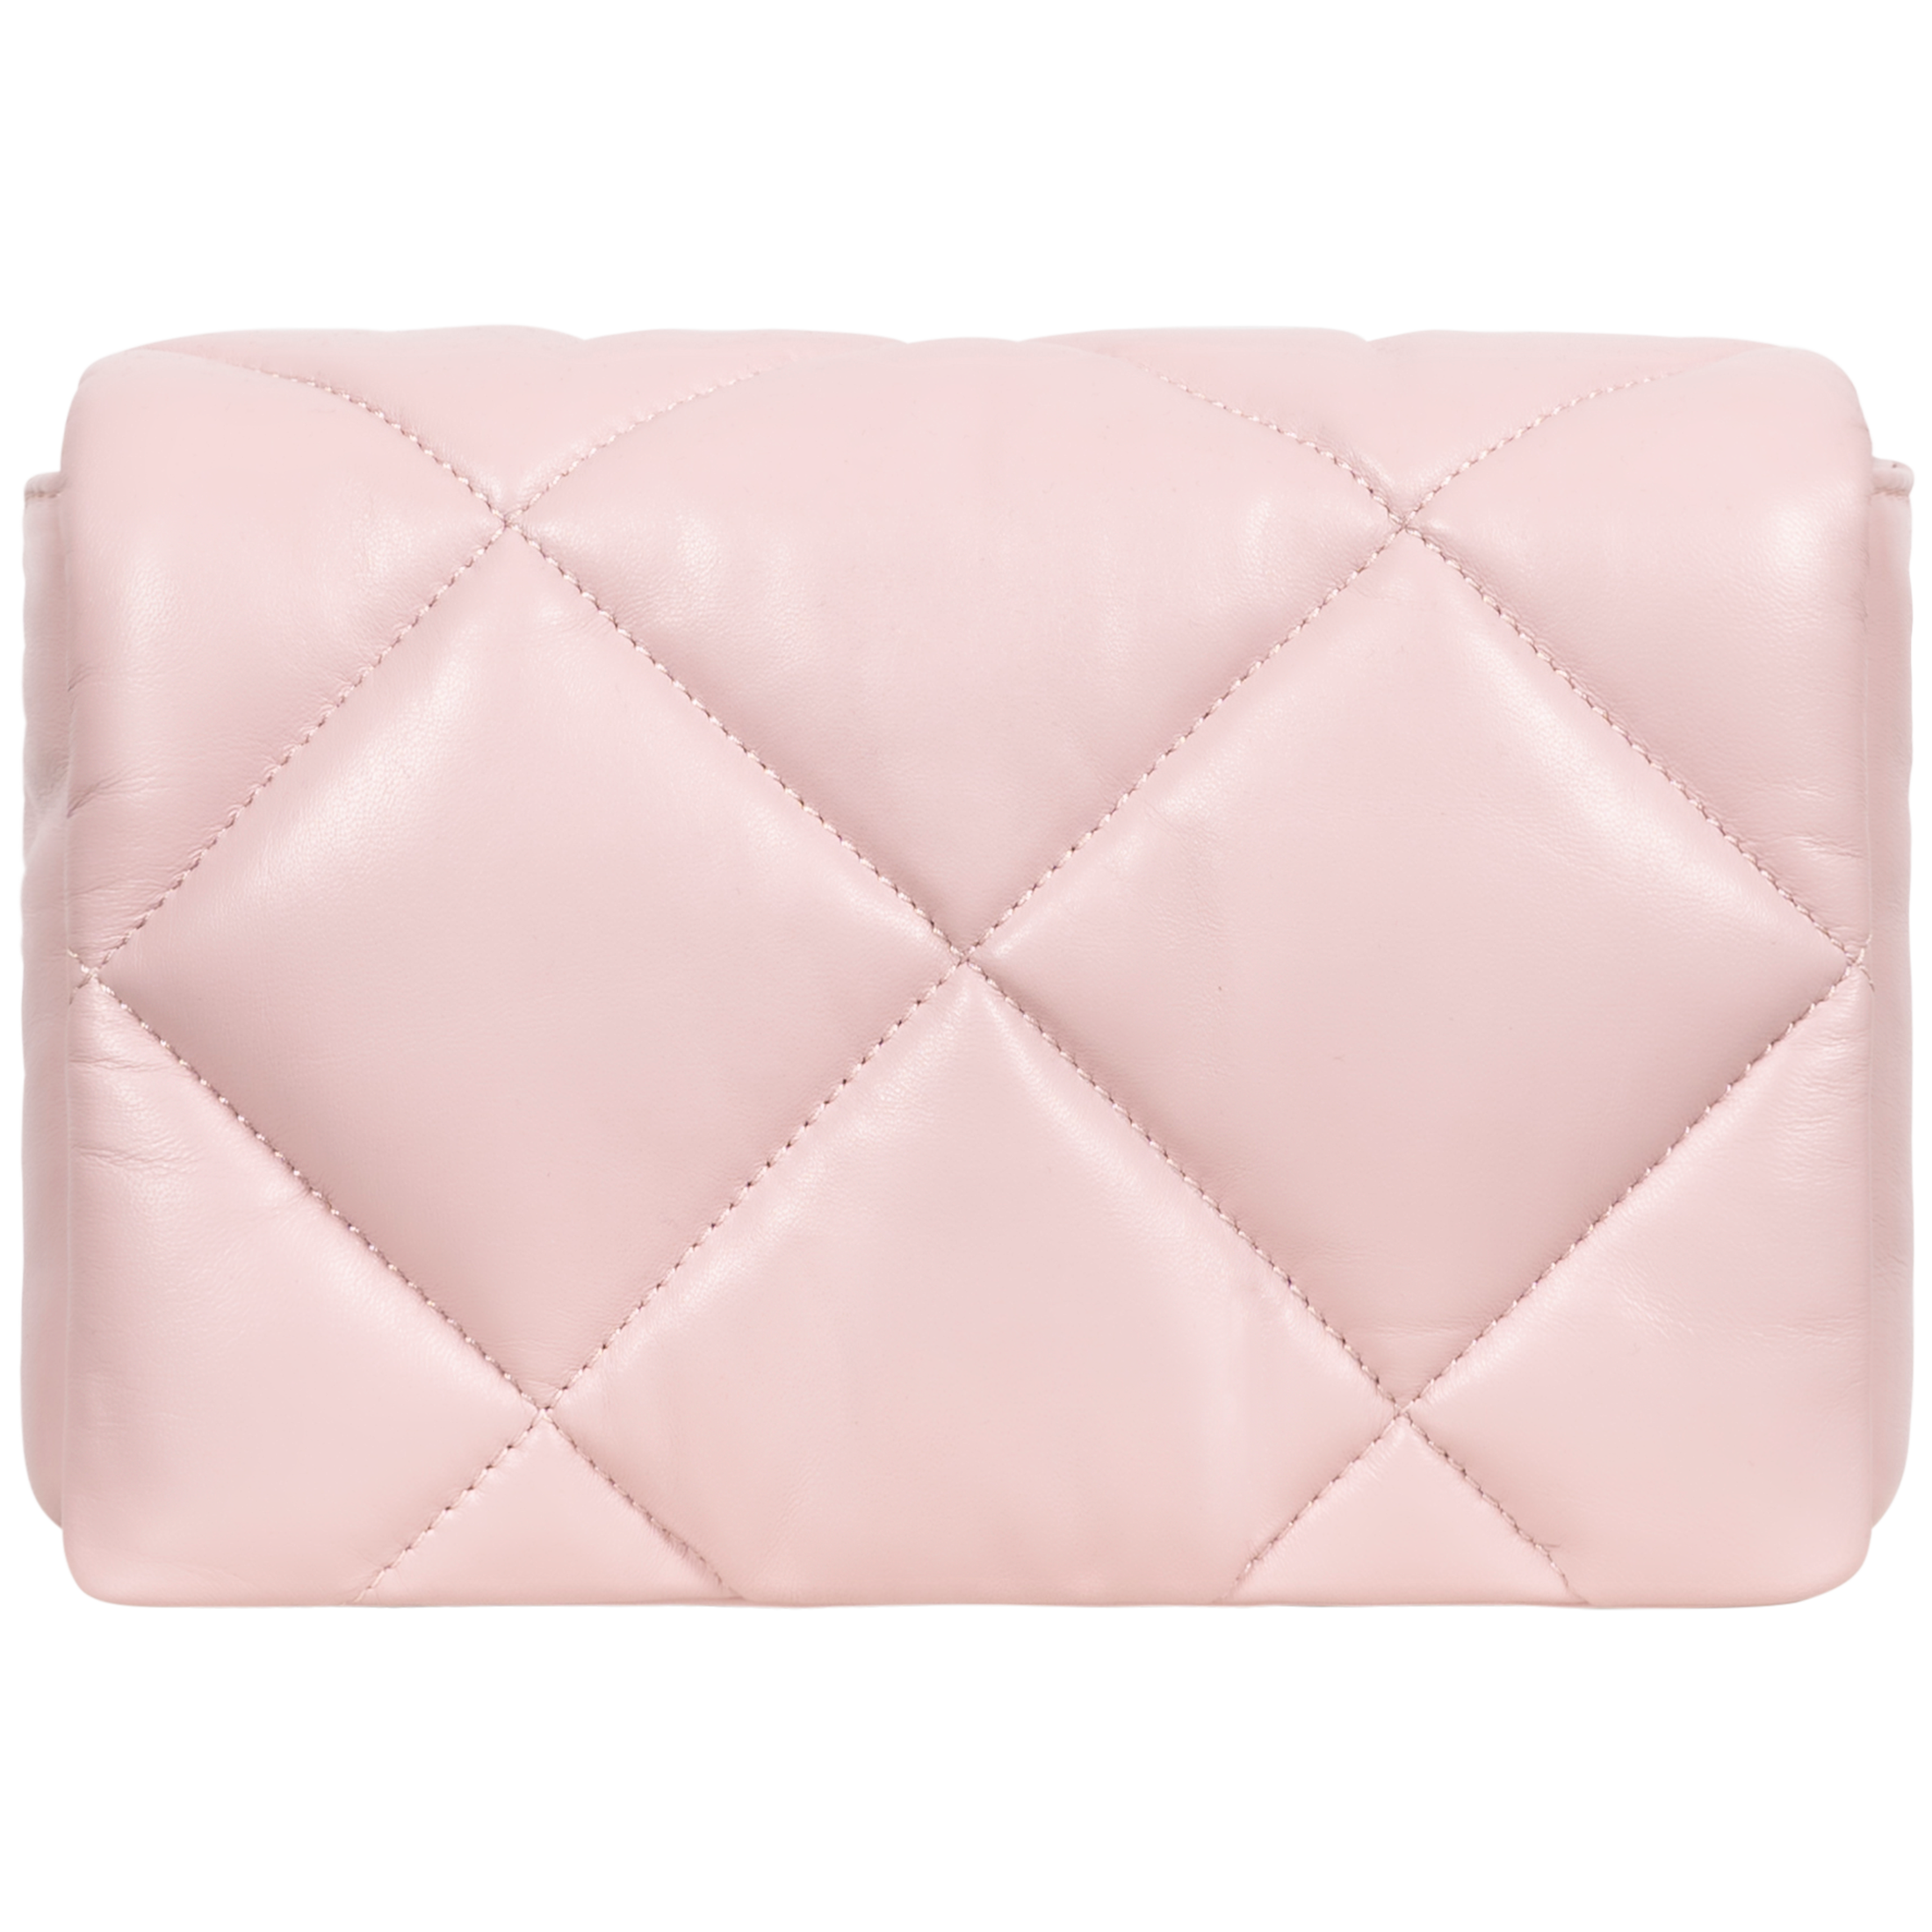 Brynn Chain Bag - Pink Cream/Silver